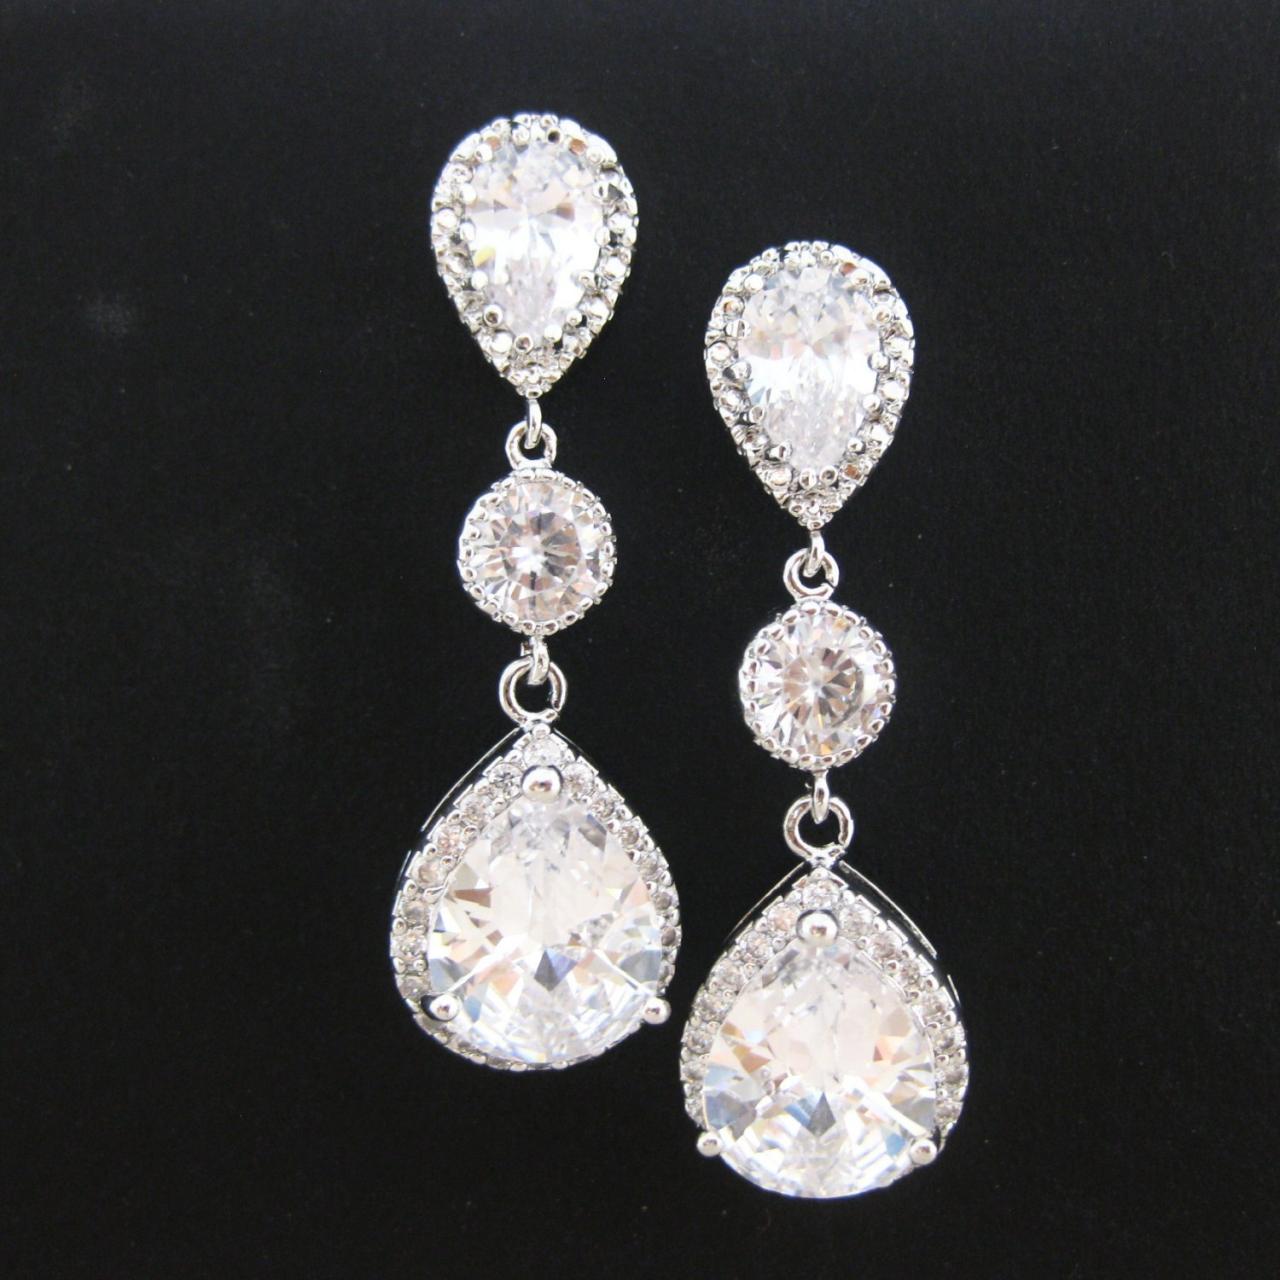 Bridal Crystal Earrings, Cubic Zirconia Teardrop Earrings, Wedding Jewelry, Bridesmaids Gift, Drop Dangle Earrings, Sparky Earrings (e021)